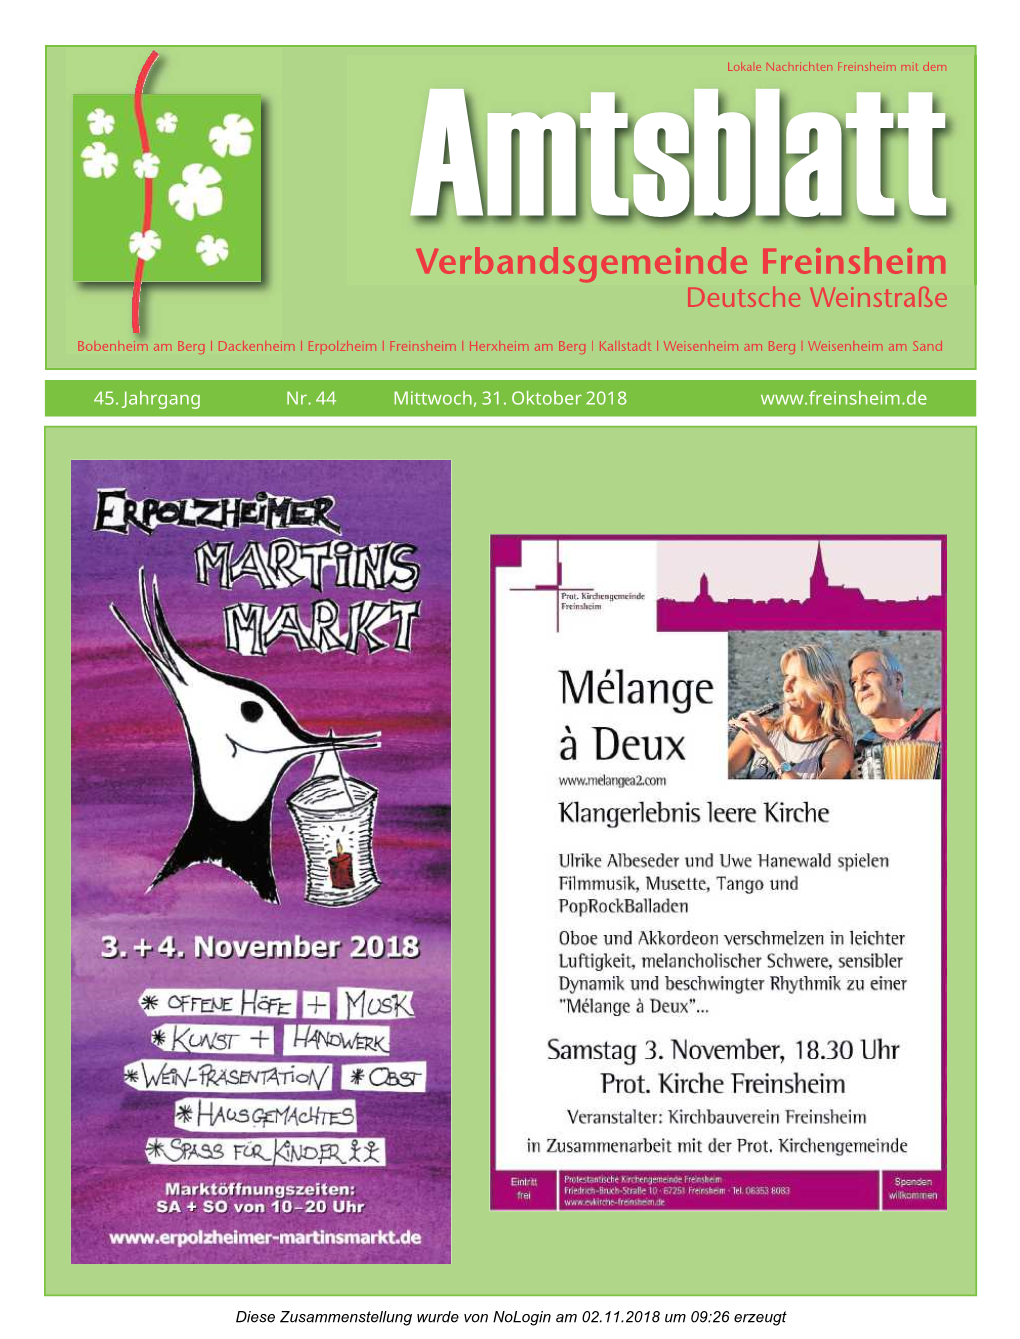 Amtsblattlokale Nachrichten Freinsheim Mit Dem Verbandsgemeinde Freinsheim Deutsche Weinstraße